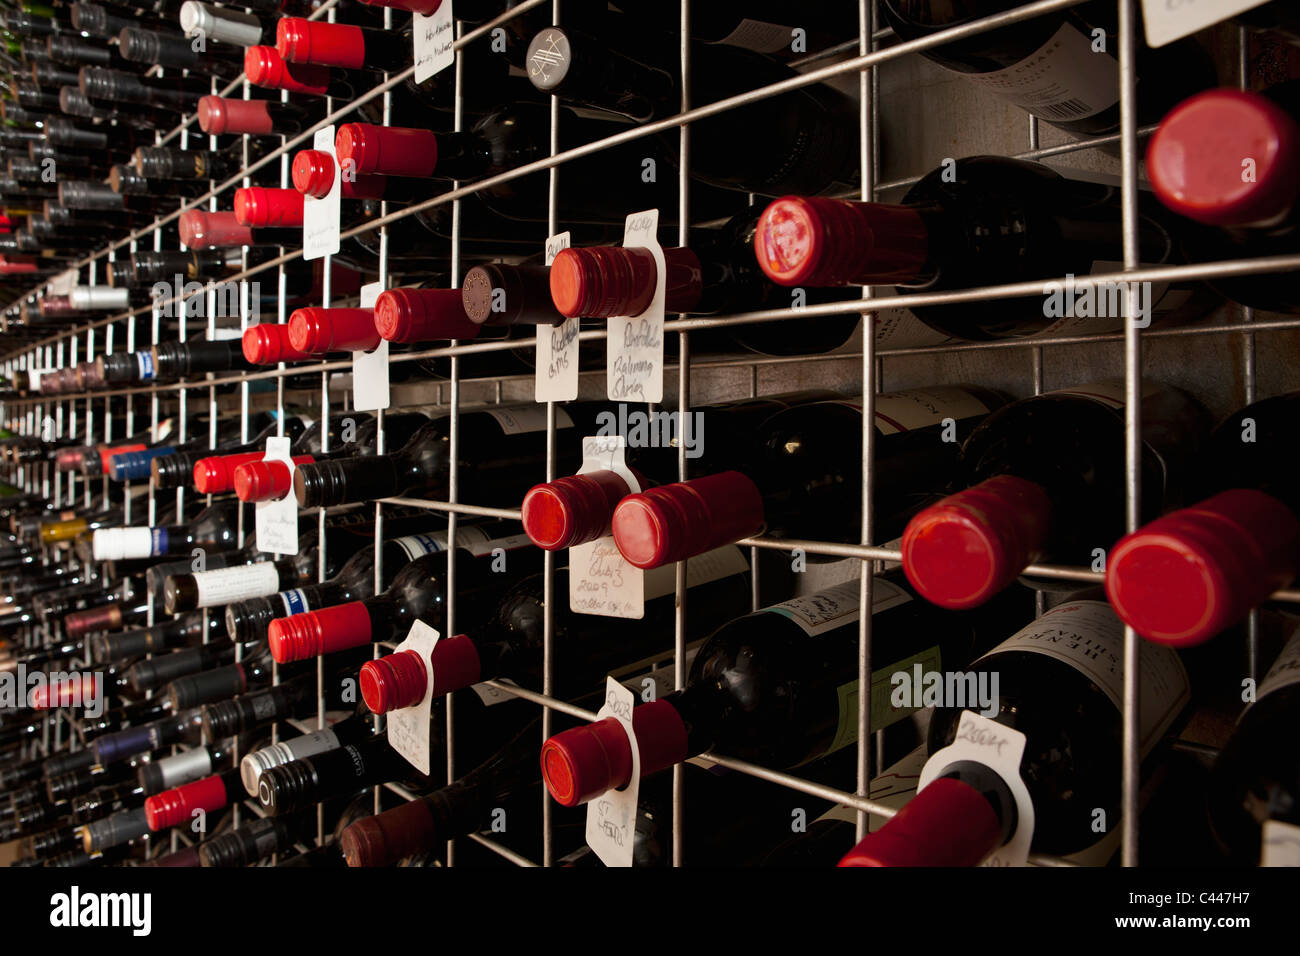 Des bouteilles de vin dans une cave Banque D'Images